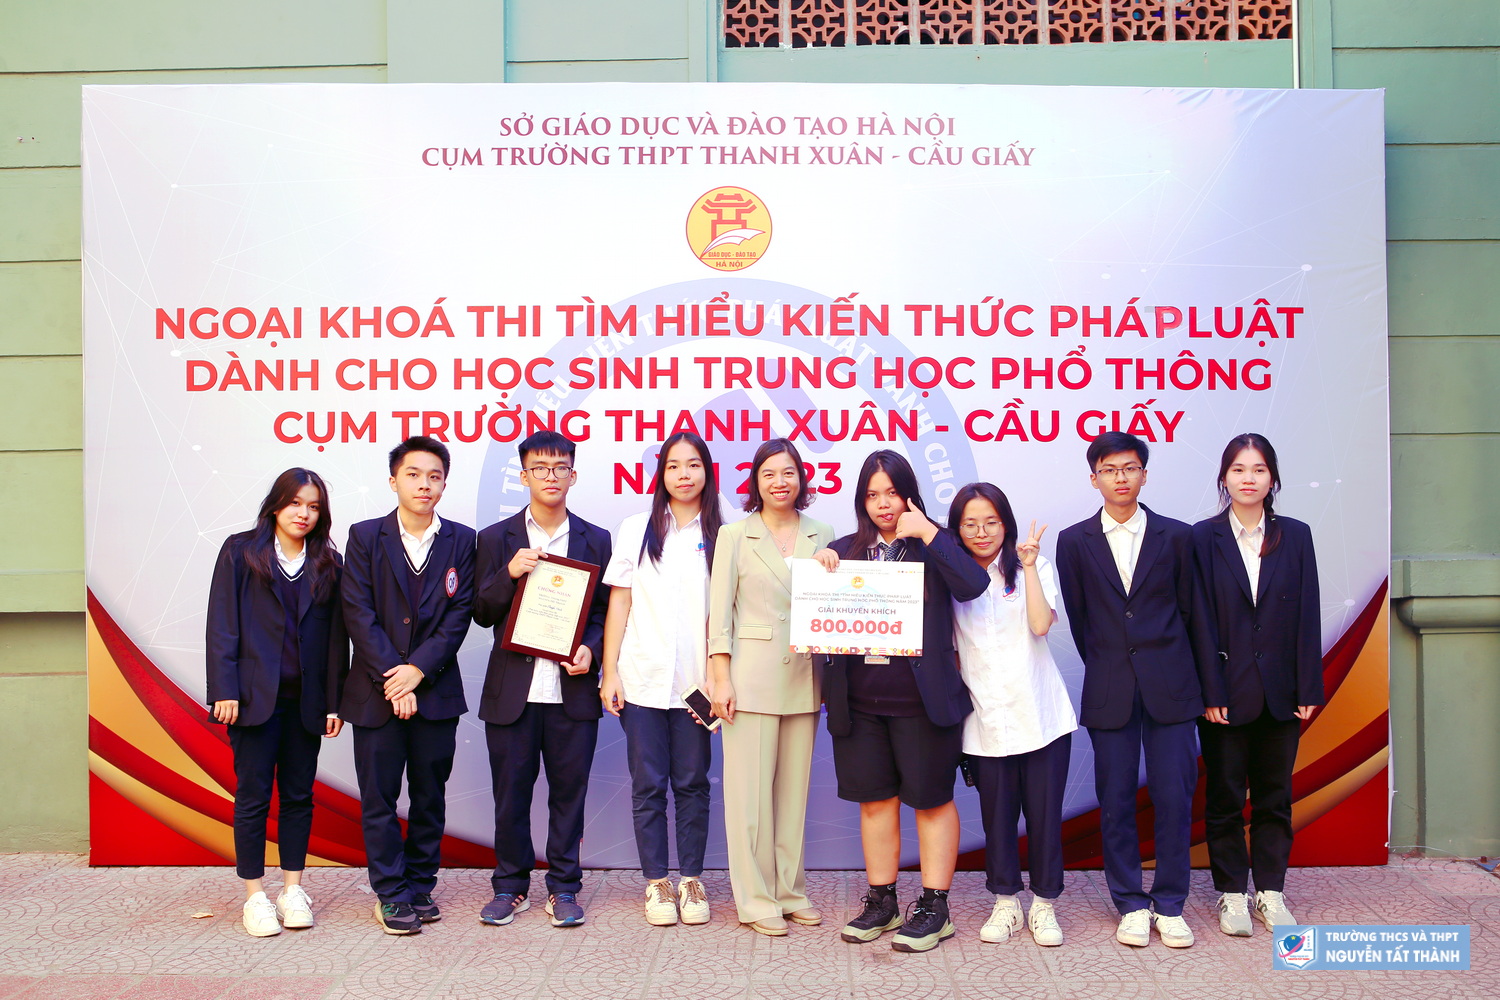 Học sinh trường Nguyễn Tất Thành tham dự cuộc thi “Tìm hiểu kiến thức pháp luật cấp cụm Thanh Xuân - Cầu Giấy”